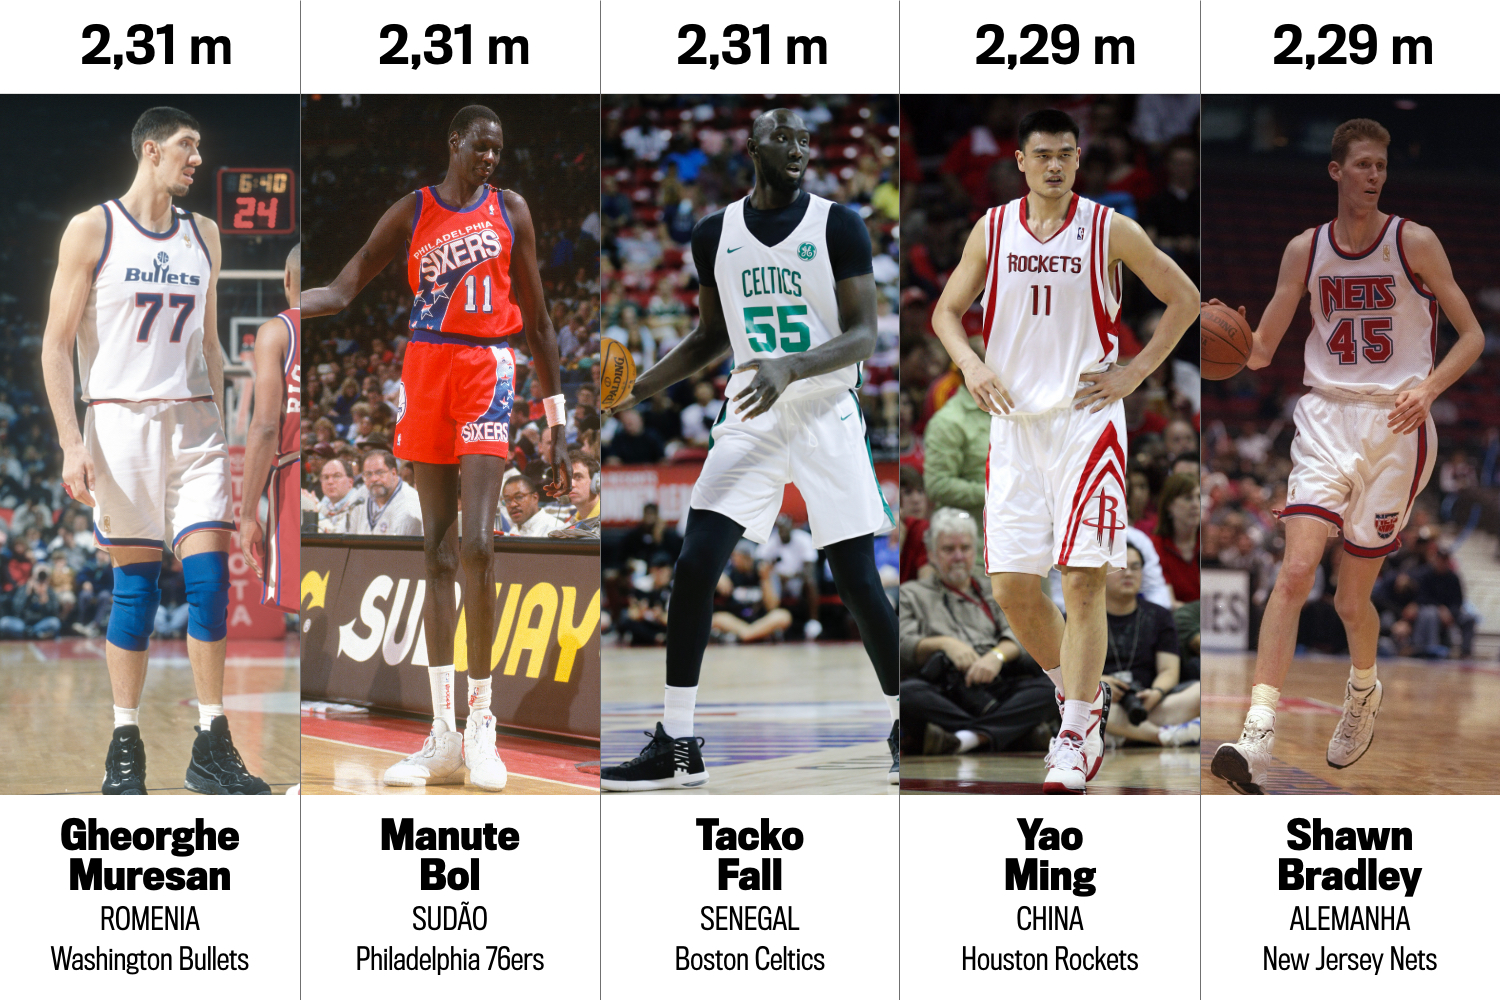 Tacko Fall, o novo gigante da NBA com incríveis 2,31m